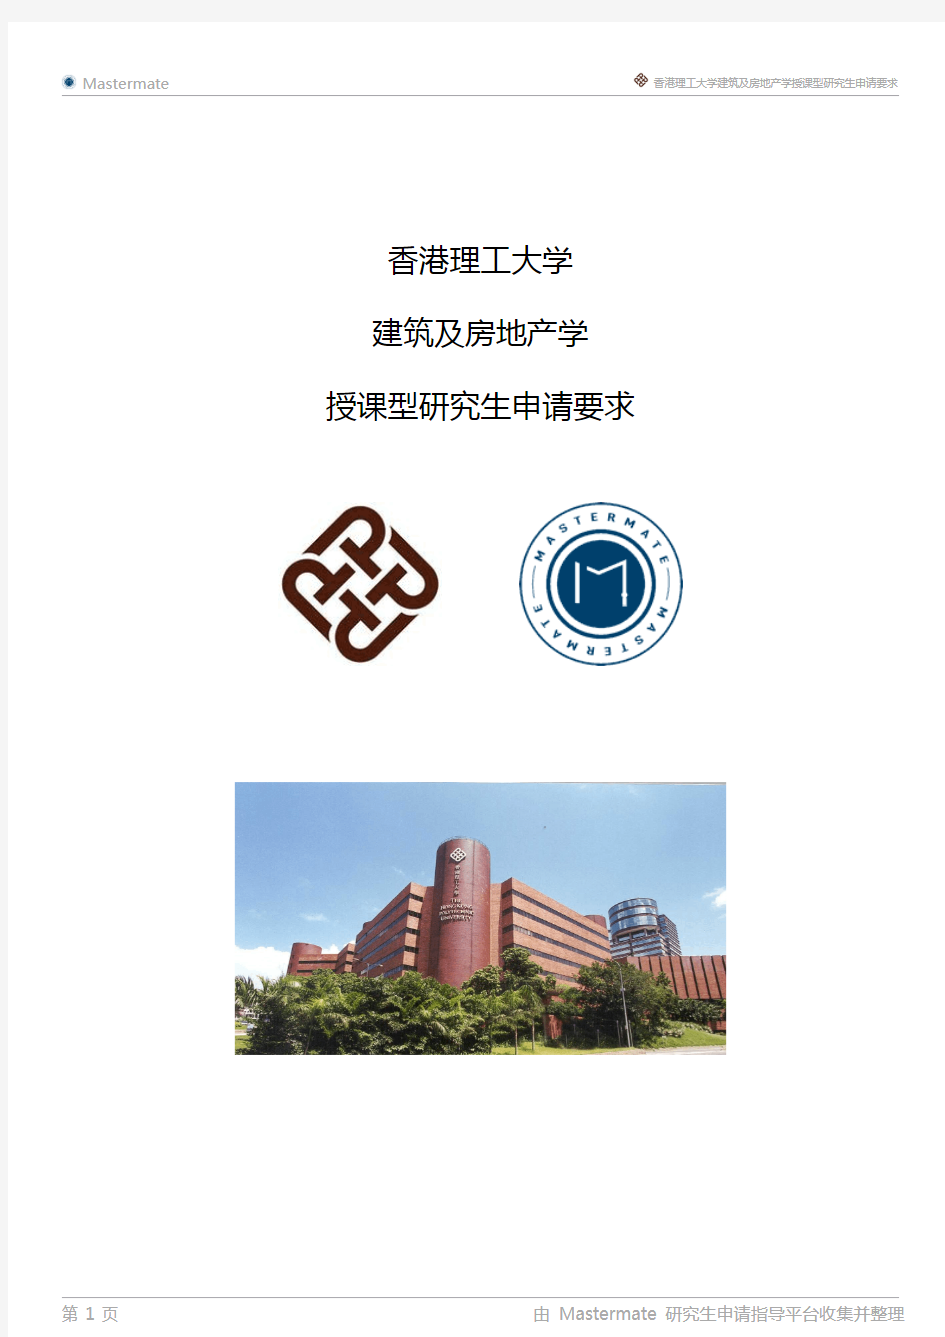 香港理工大学建筑及房地产学授课型研究生申请要求